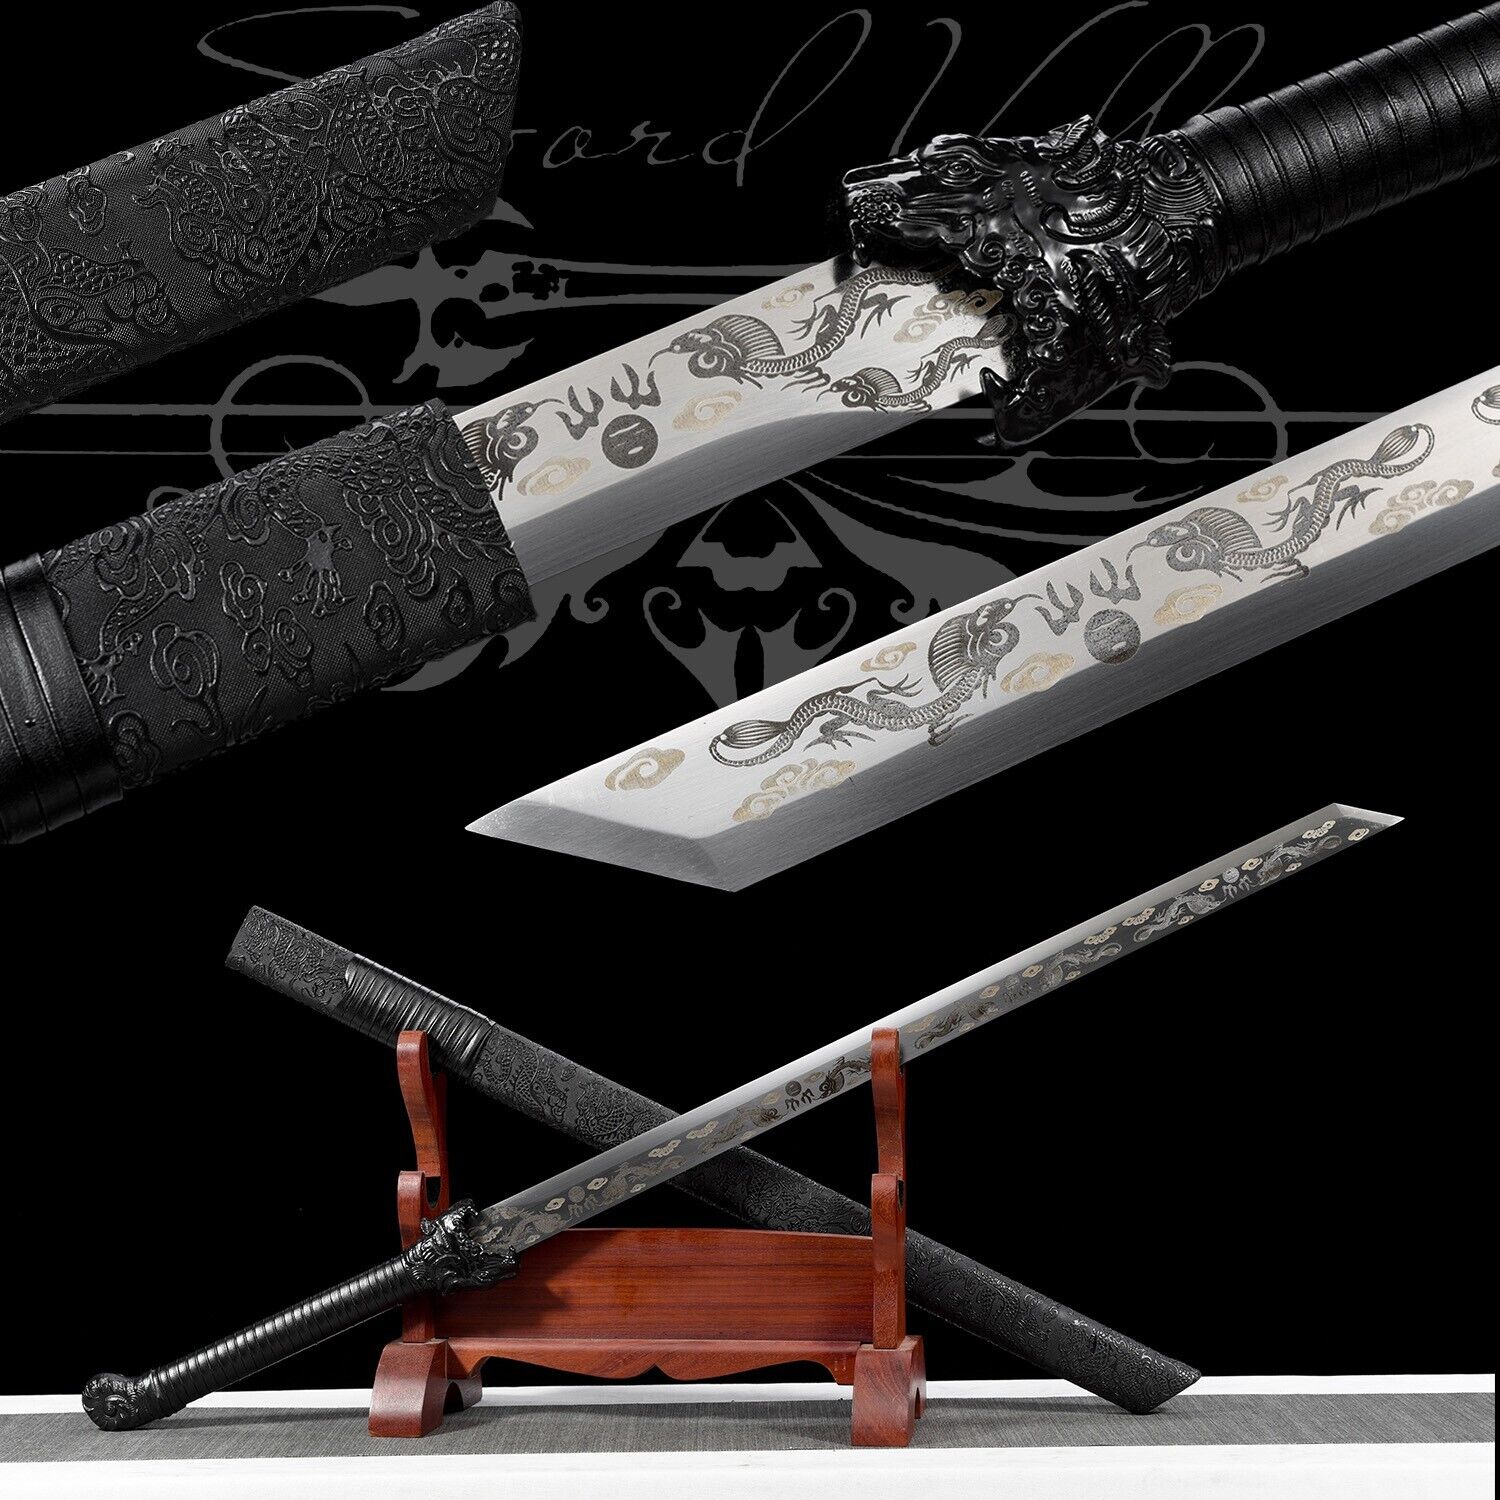 Handmade Katana/Manganese Steel/Collectible Sword/Full Tang/Real/Black tiger